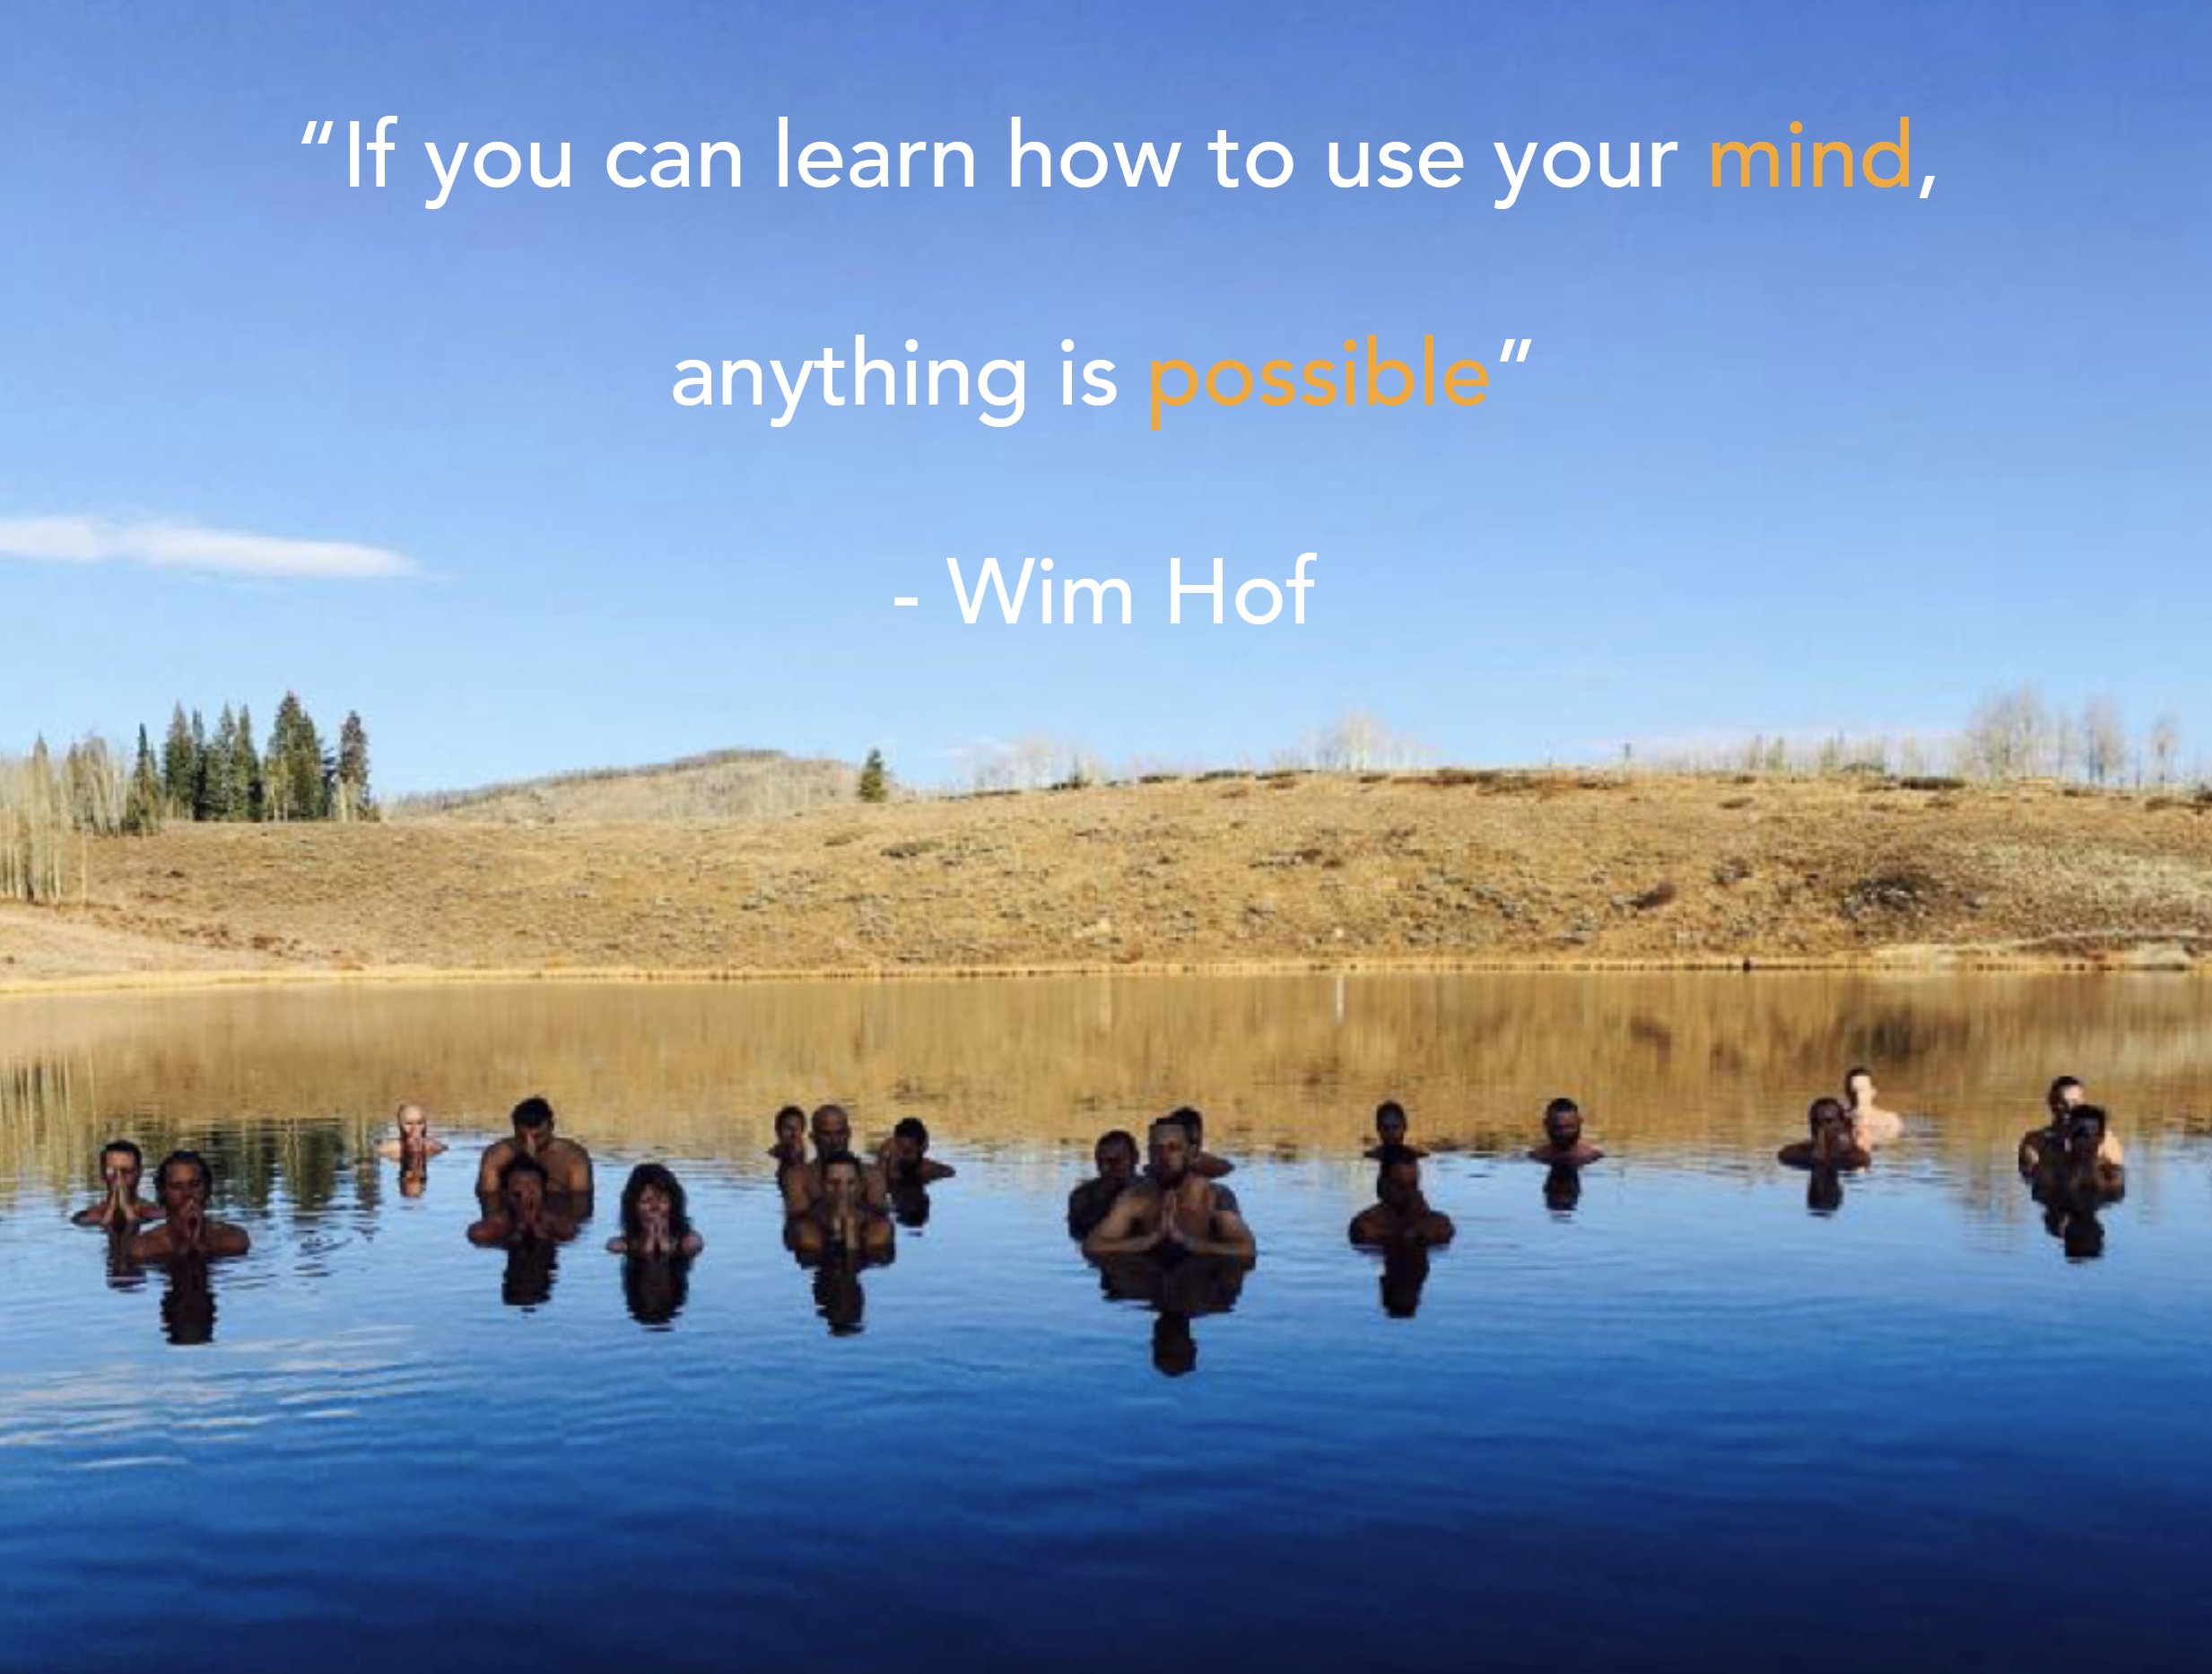 Wim Hof quotes